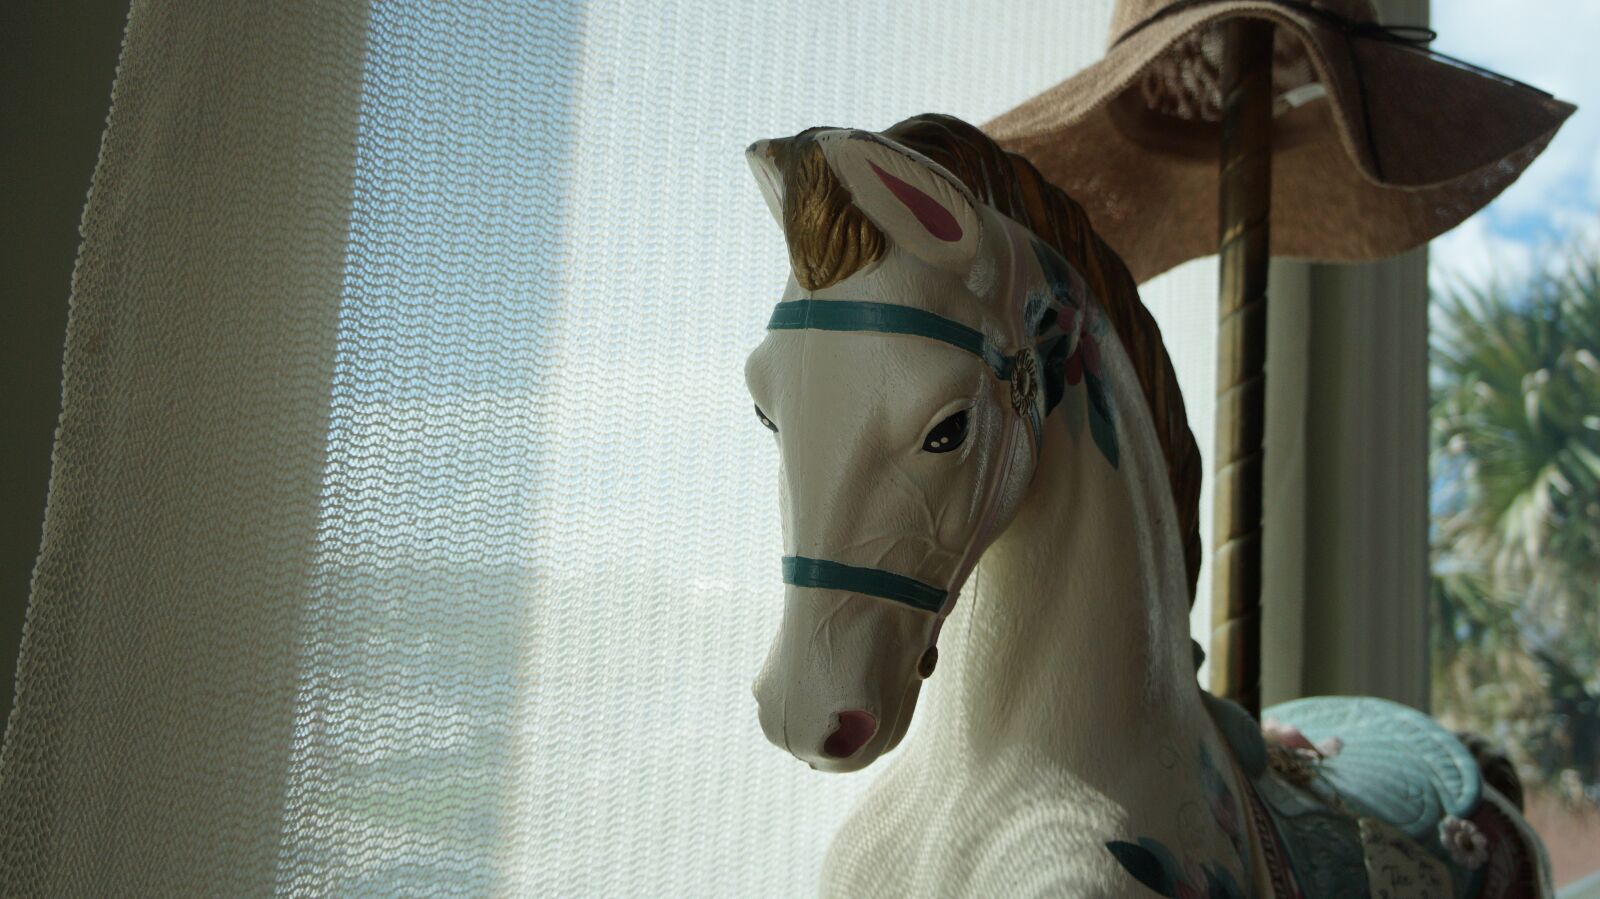 Sony Alpha a3000 sample photo. Horse, carousal, decor photography